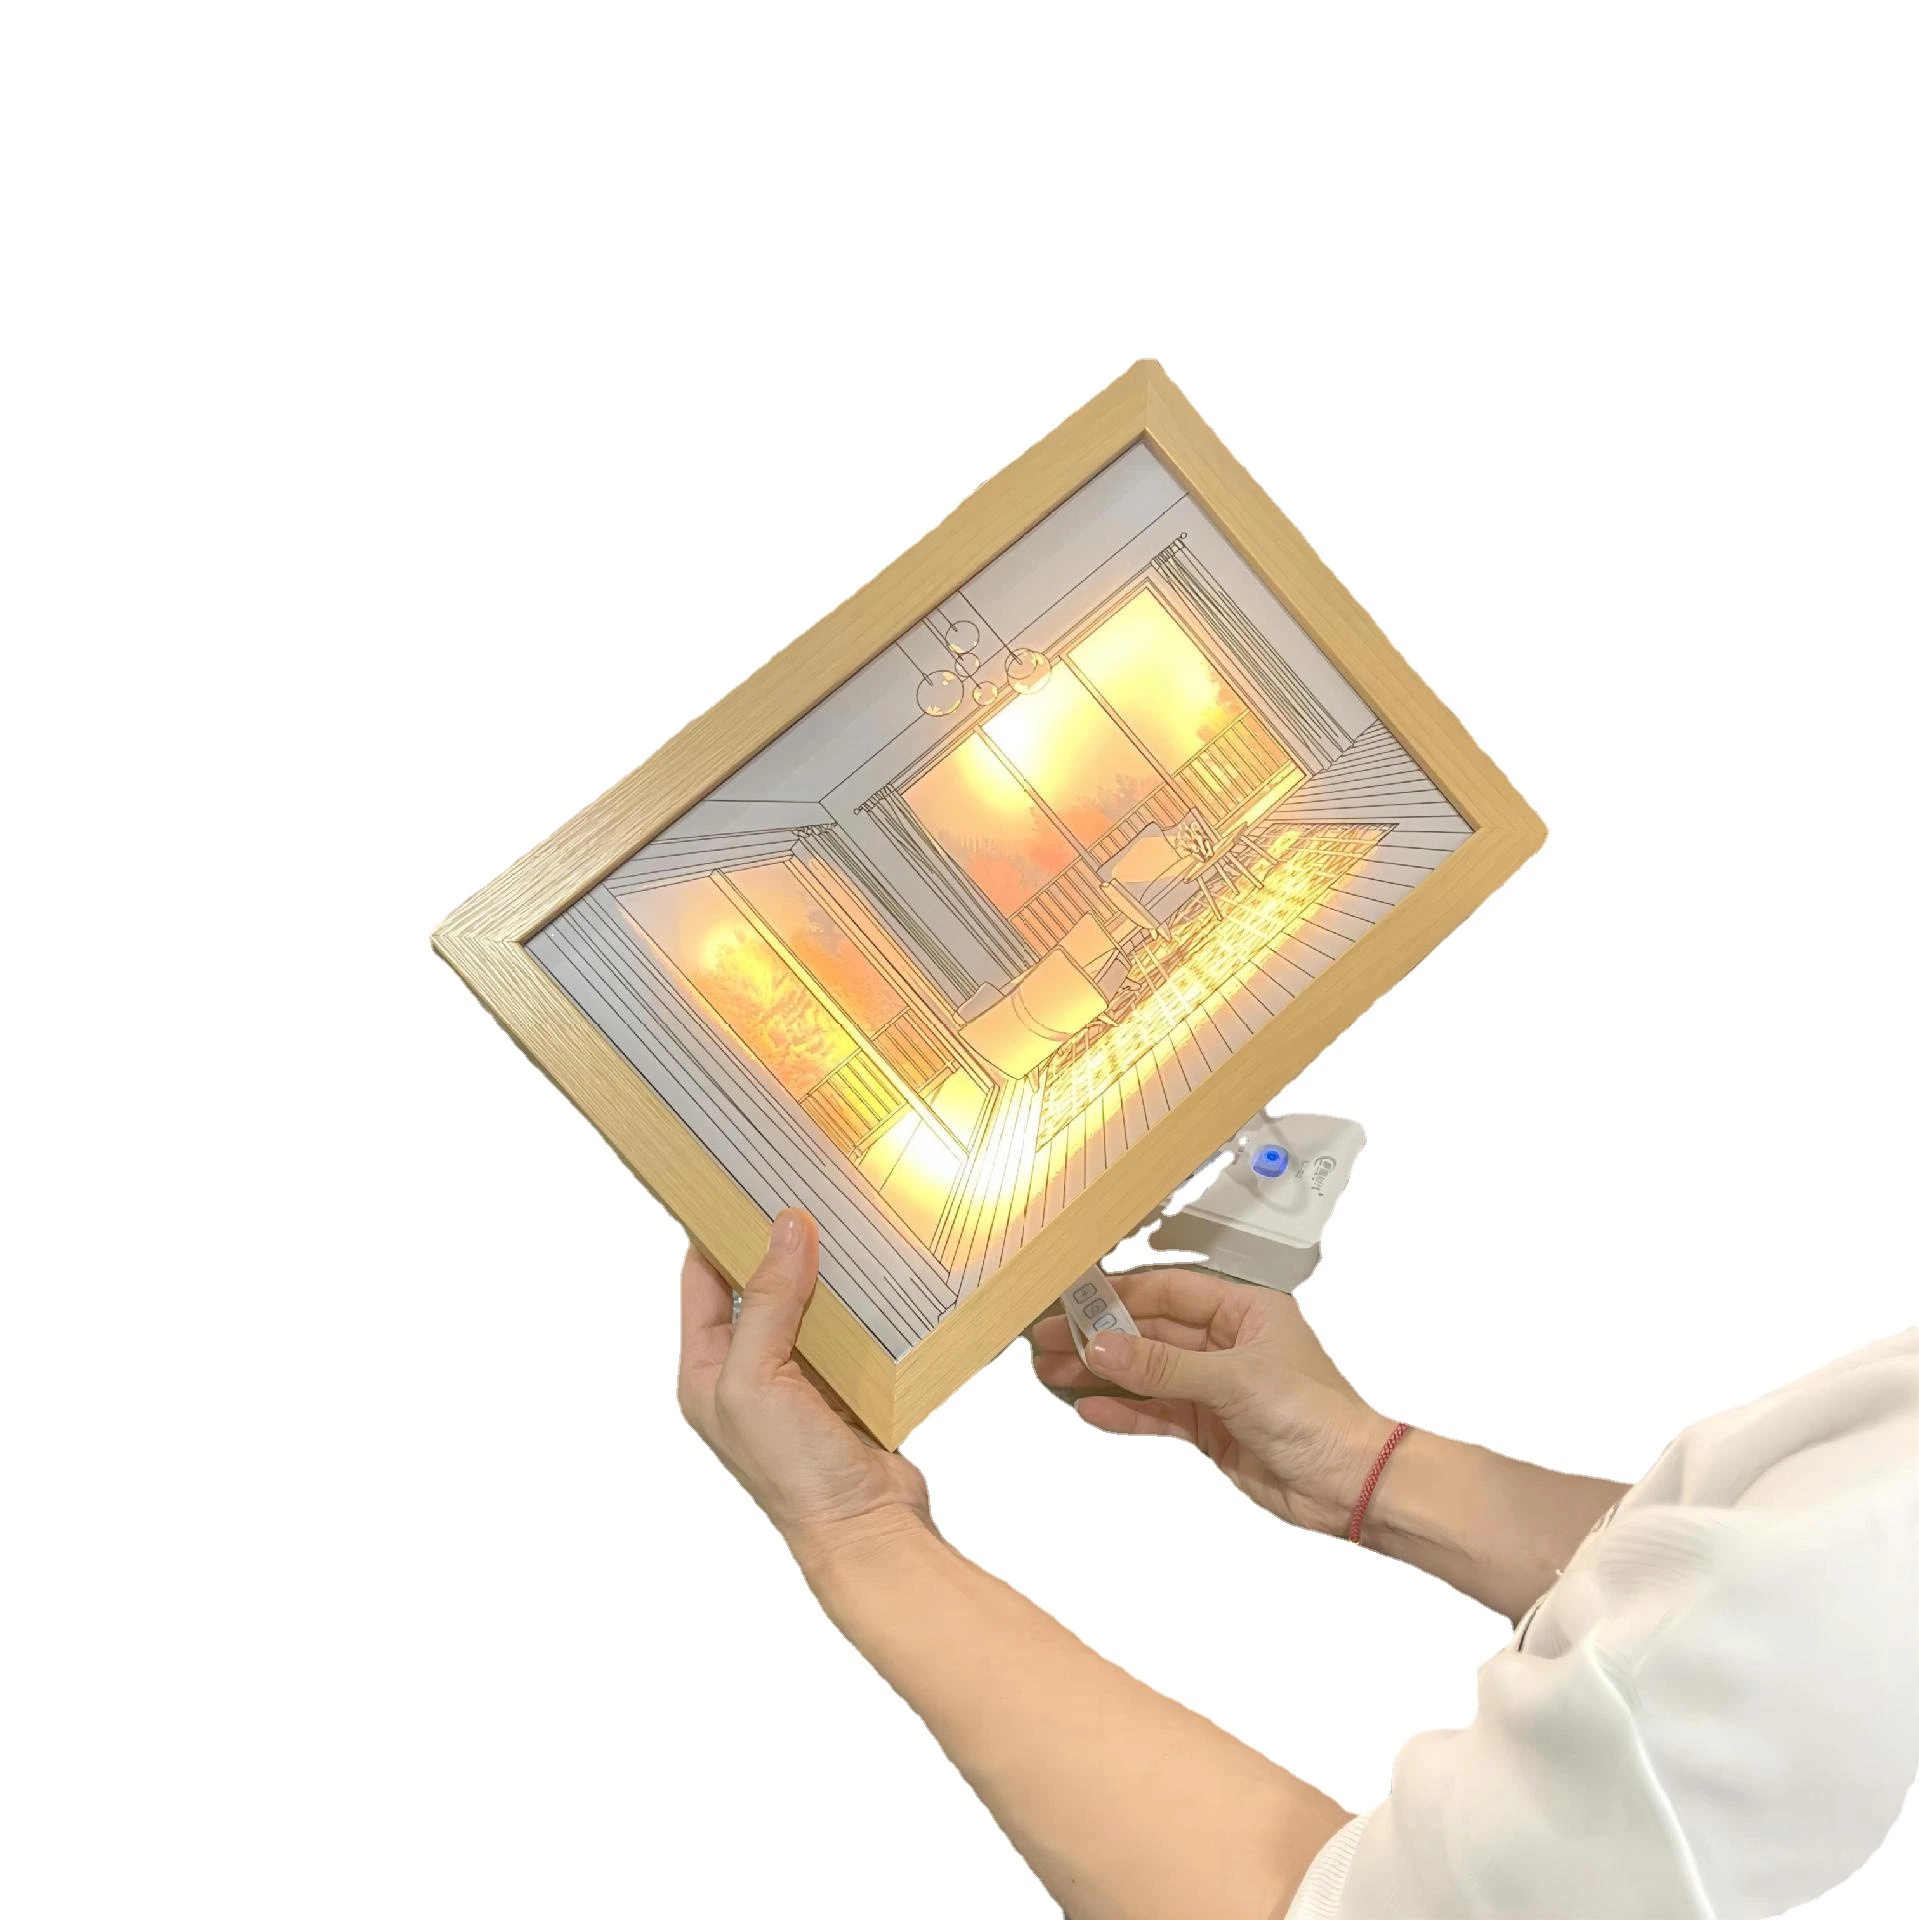 Интерьер на прикроватном мониторе Трехцветный светодиодный индикатор Canvas окраска светодиодный индикатор рамы лампы